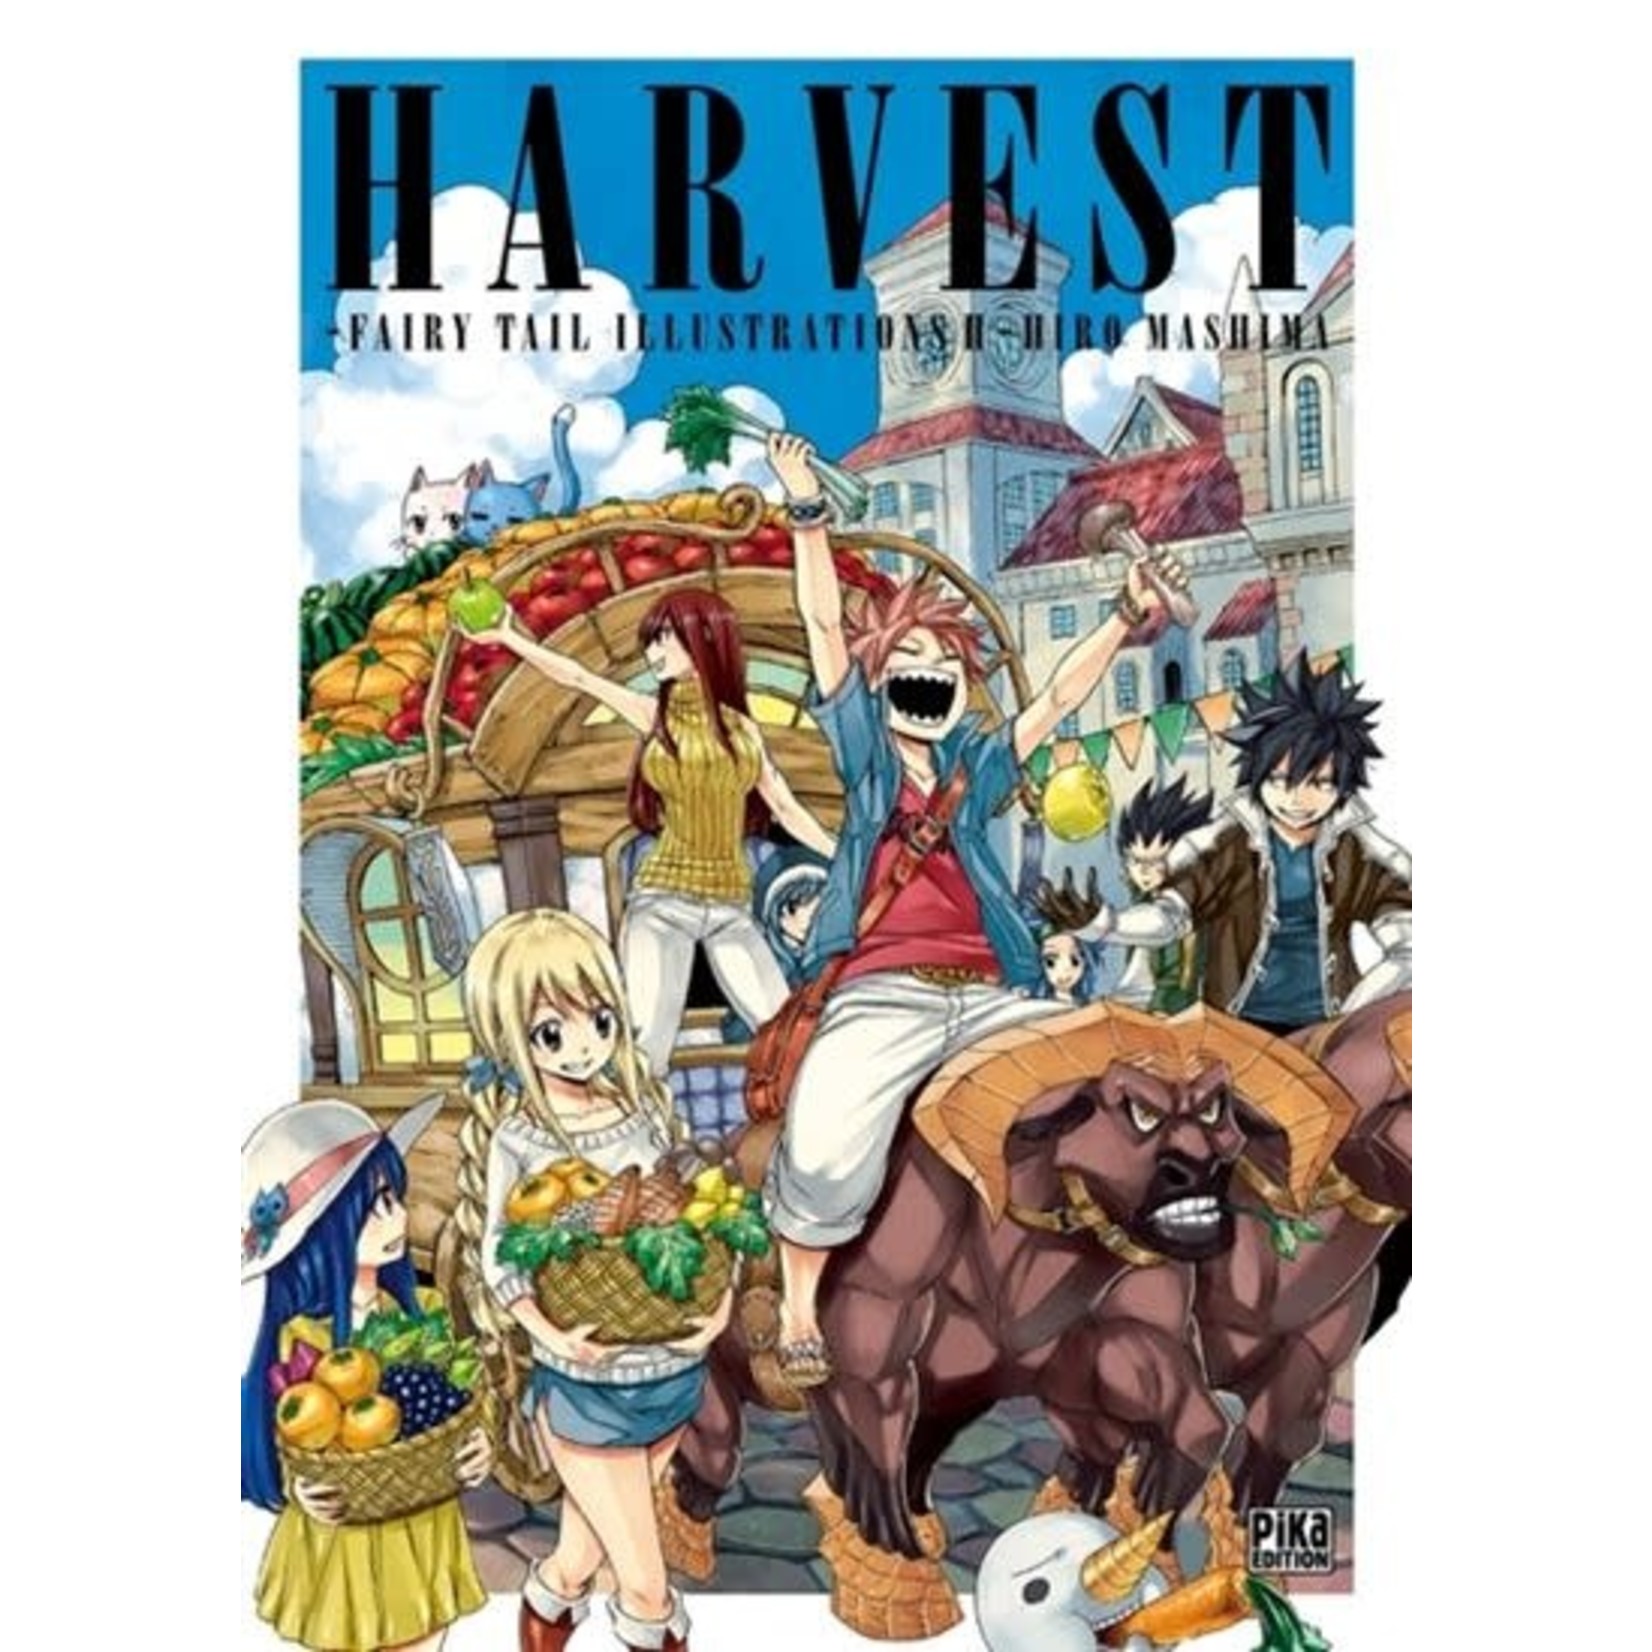 Pika Fairy Tail Artbook - Harvest